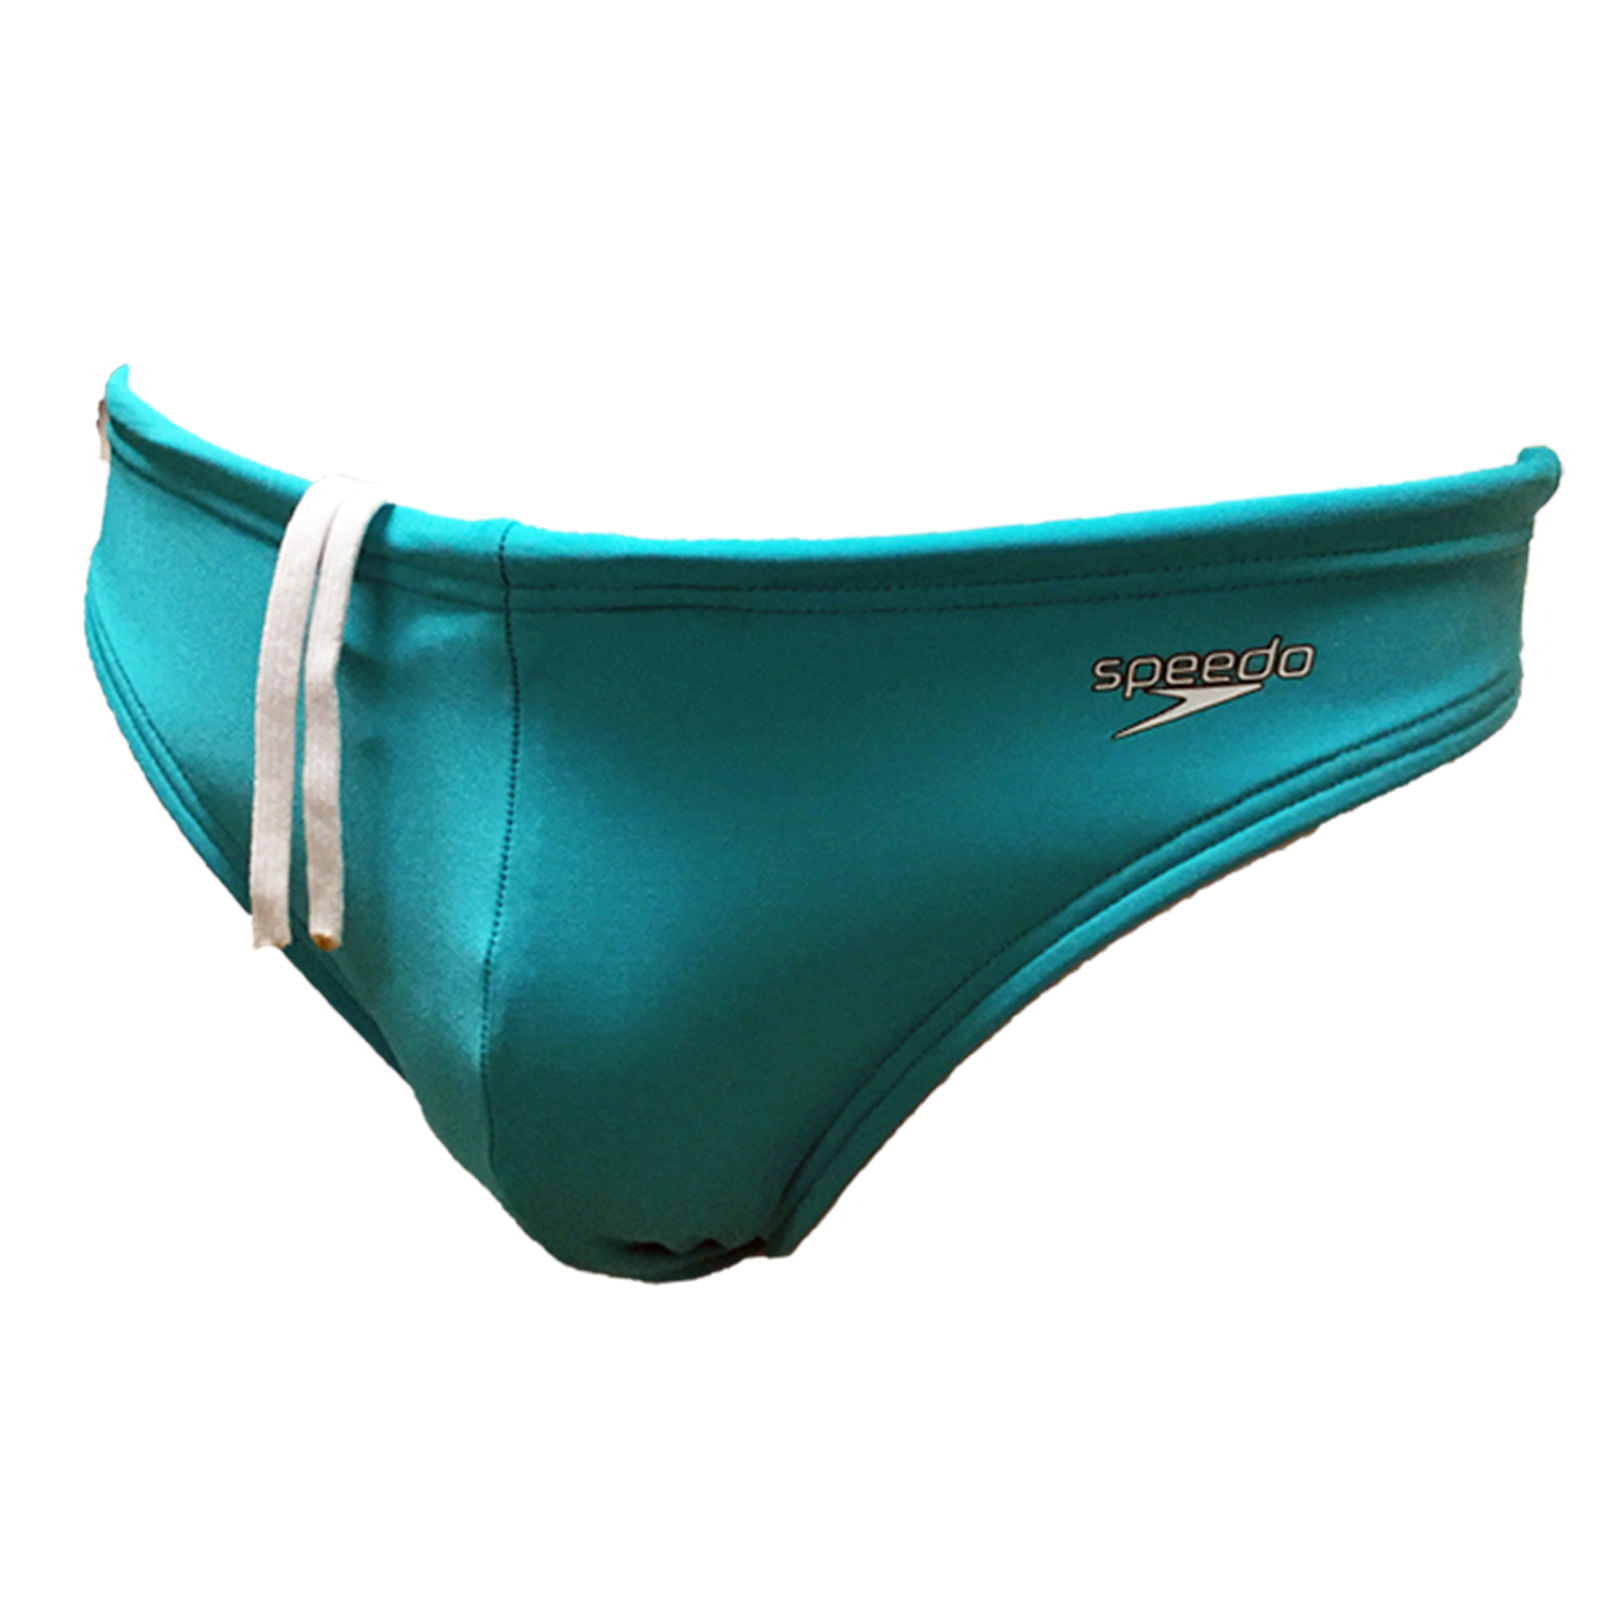 Speedo Men's Lycra Swimming Suit Race Solar Brief 7300120 - Walmart.com ...